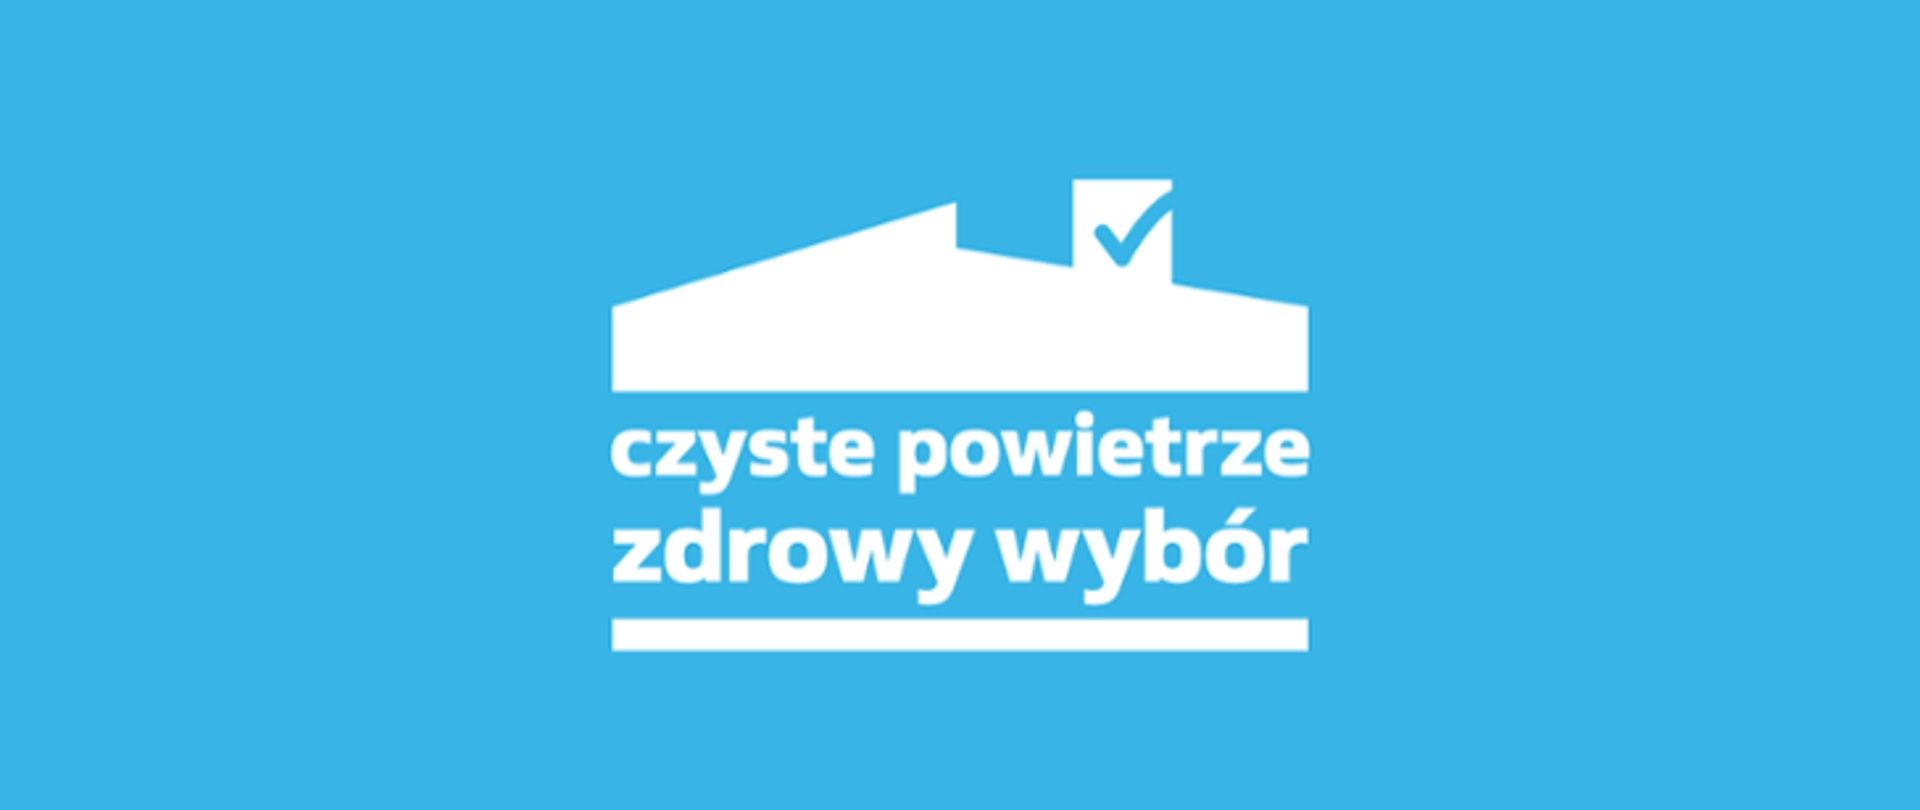 CZYSTE POWIETRZE - Dofinansowania - uzyskamy ZA CIEBIE Poznań - Zdjęcie 1